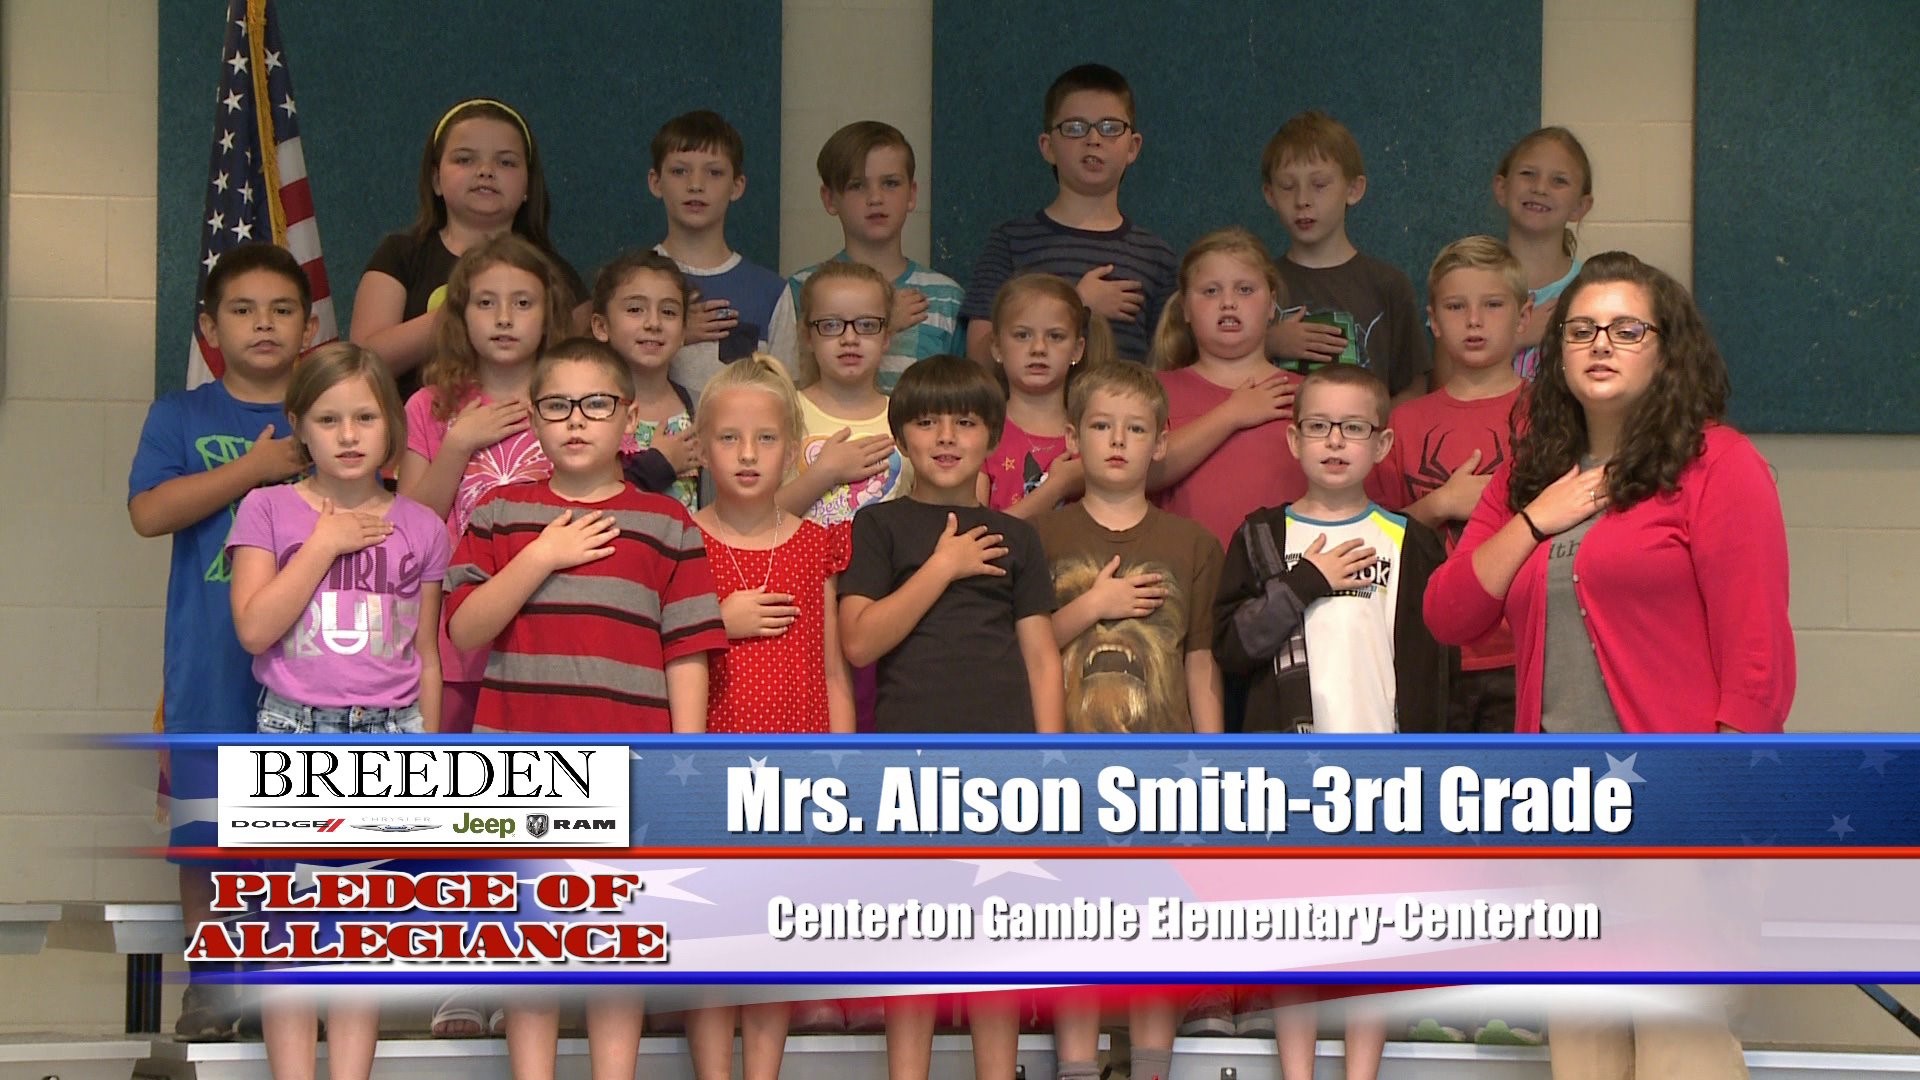 Mrs. Alison Smith  3rd Grade  Centerton  Gamble Elementary - Centerton